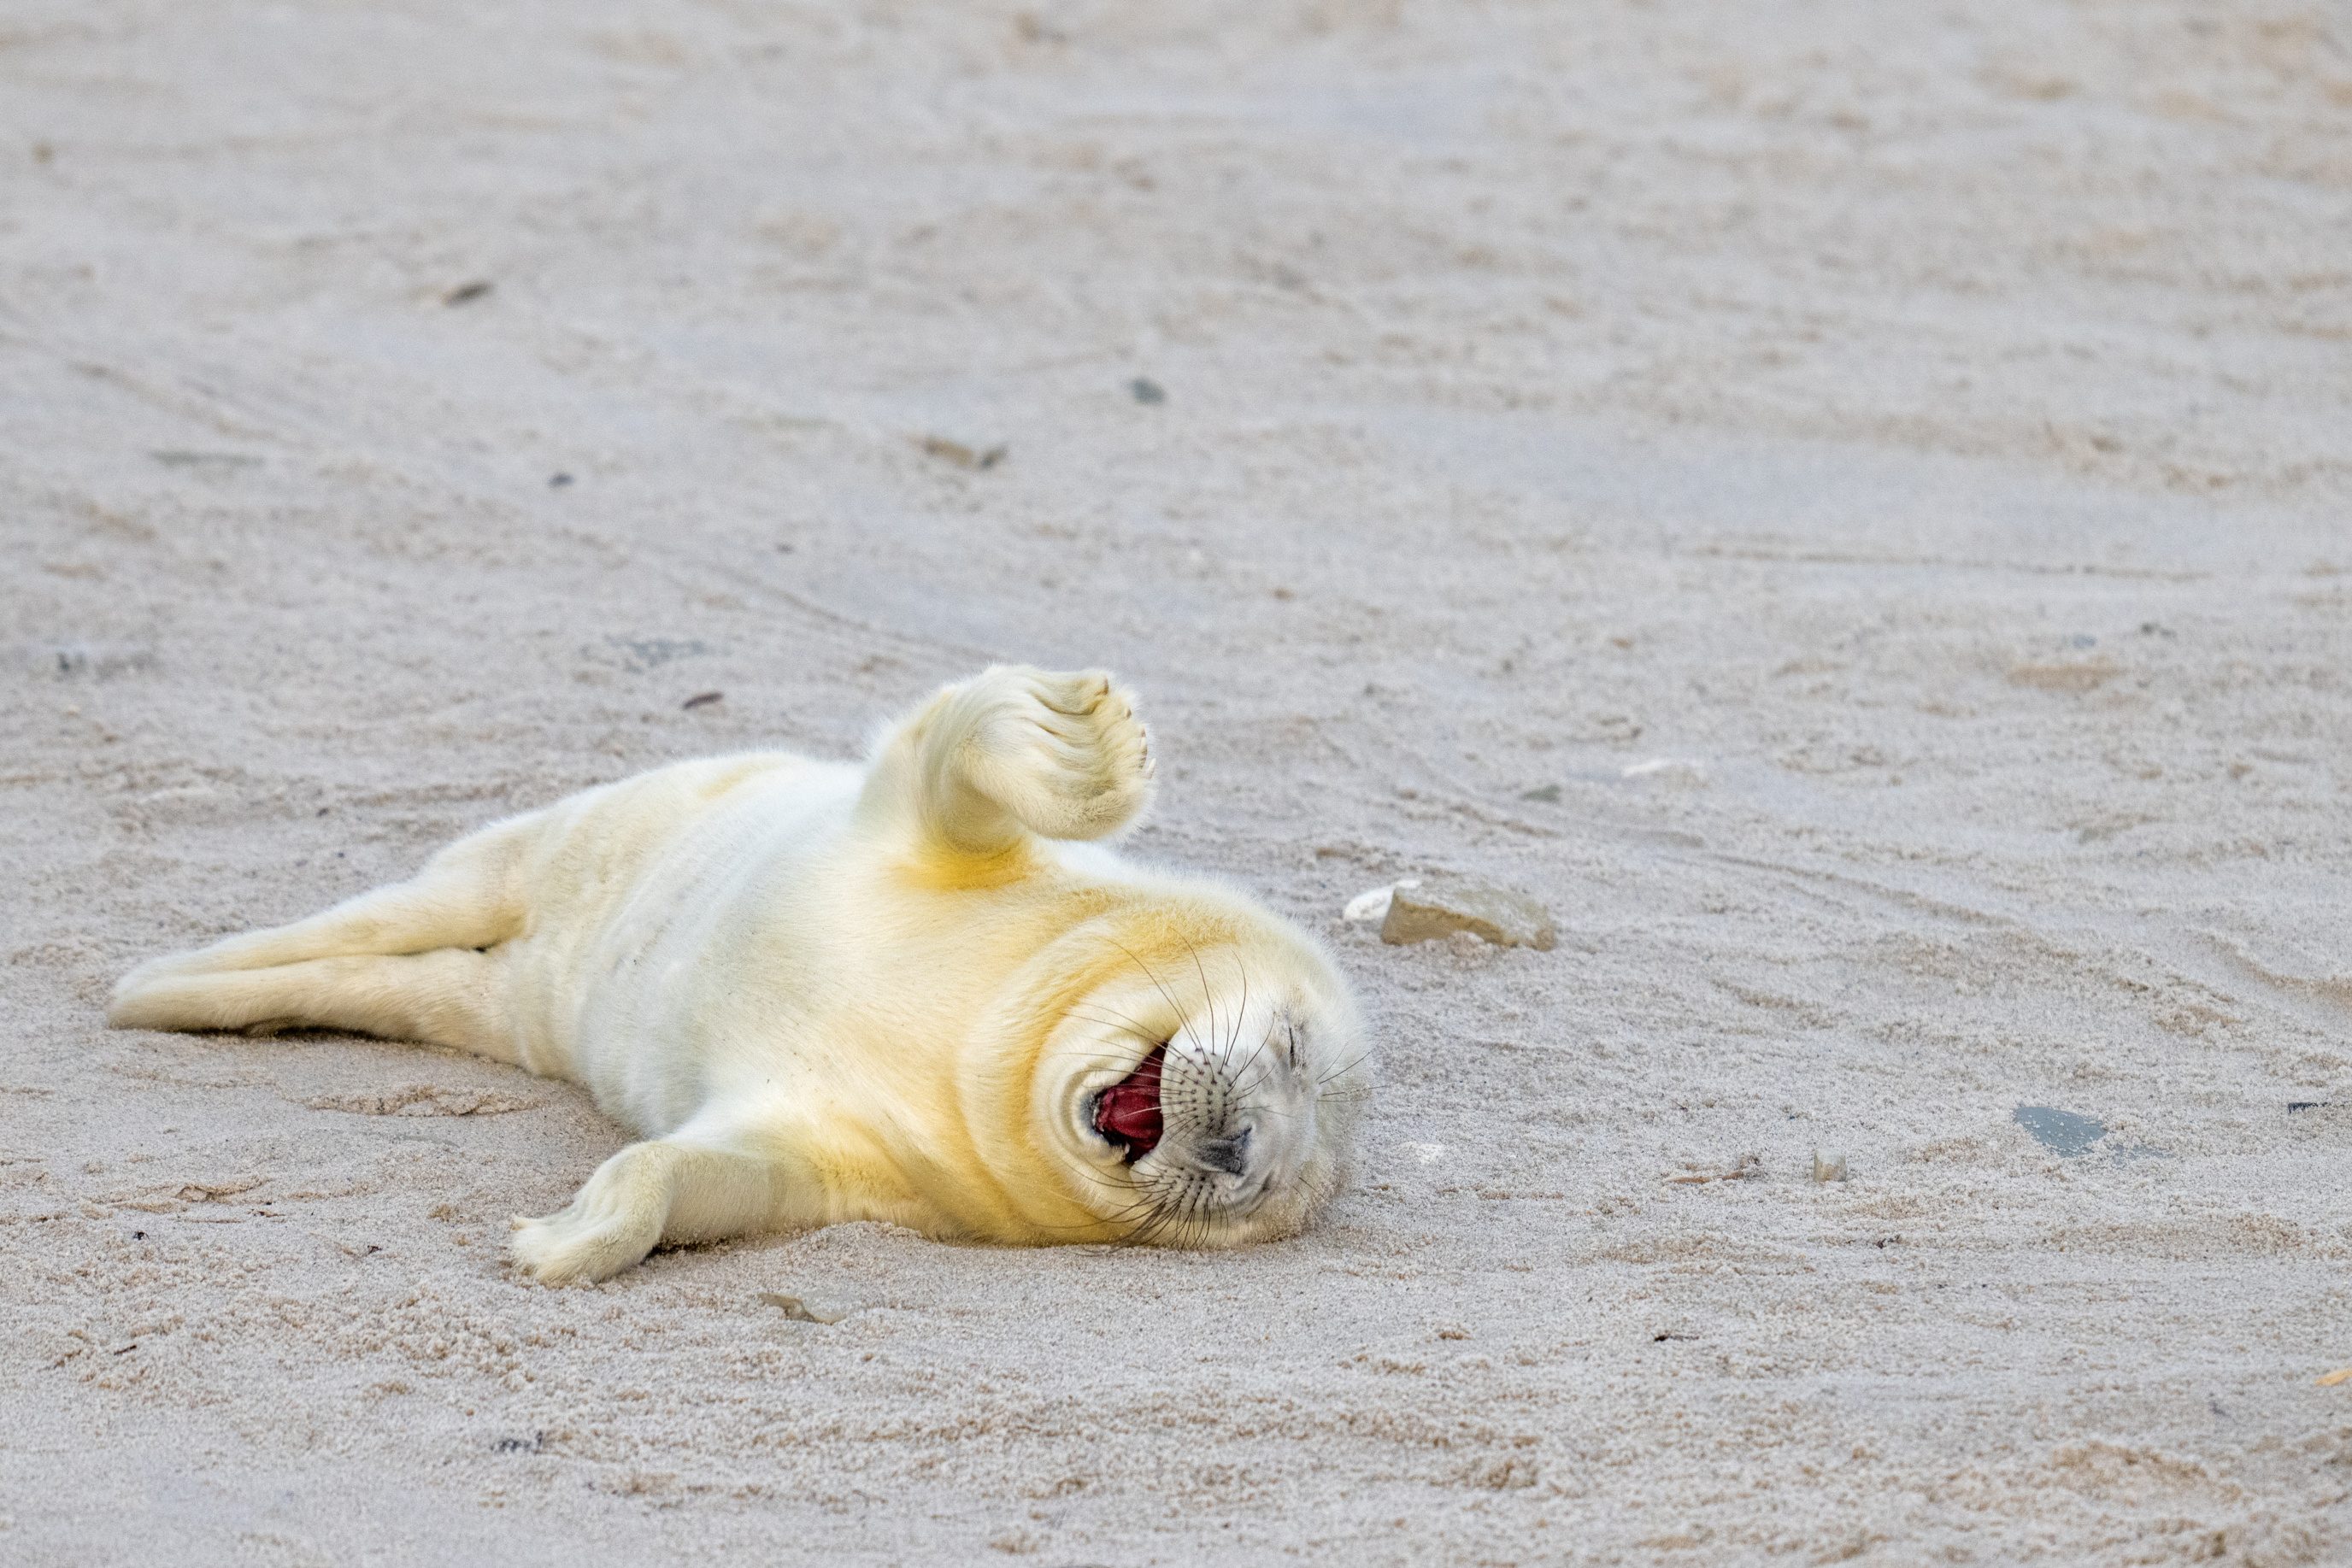 Uma foca está na areia e parece estar rindo.